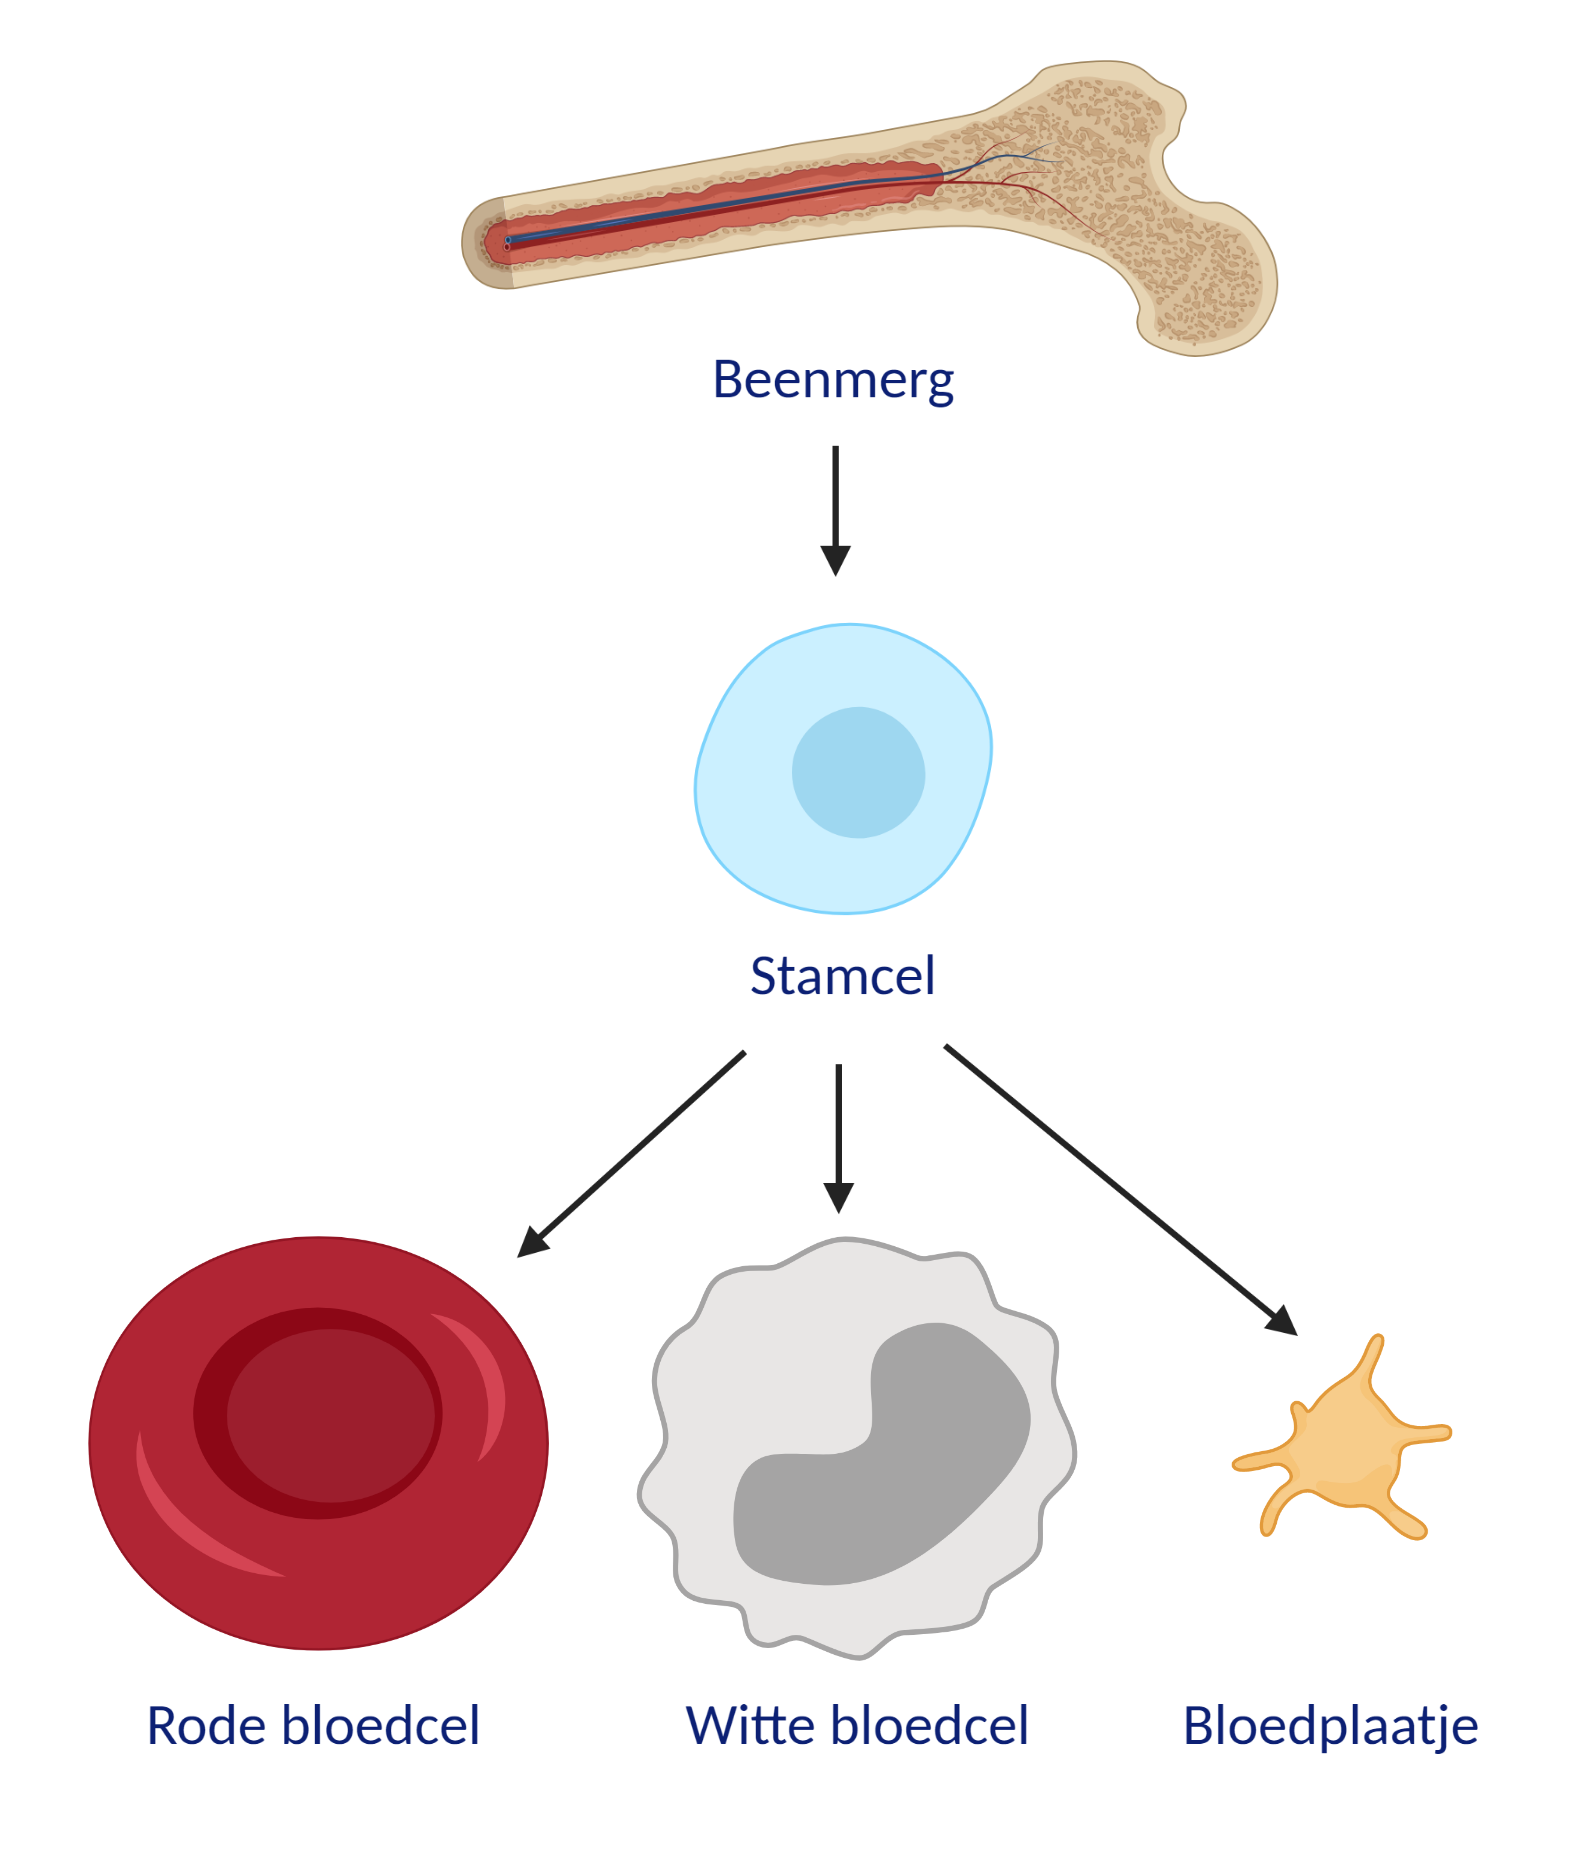 Stamcellen in het beenmerg kunnen zich delen in verschillende bloedcellen: rode bloedcellen, witte bloedcellen en bloedplaatjes